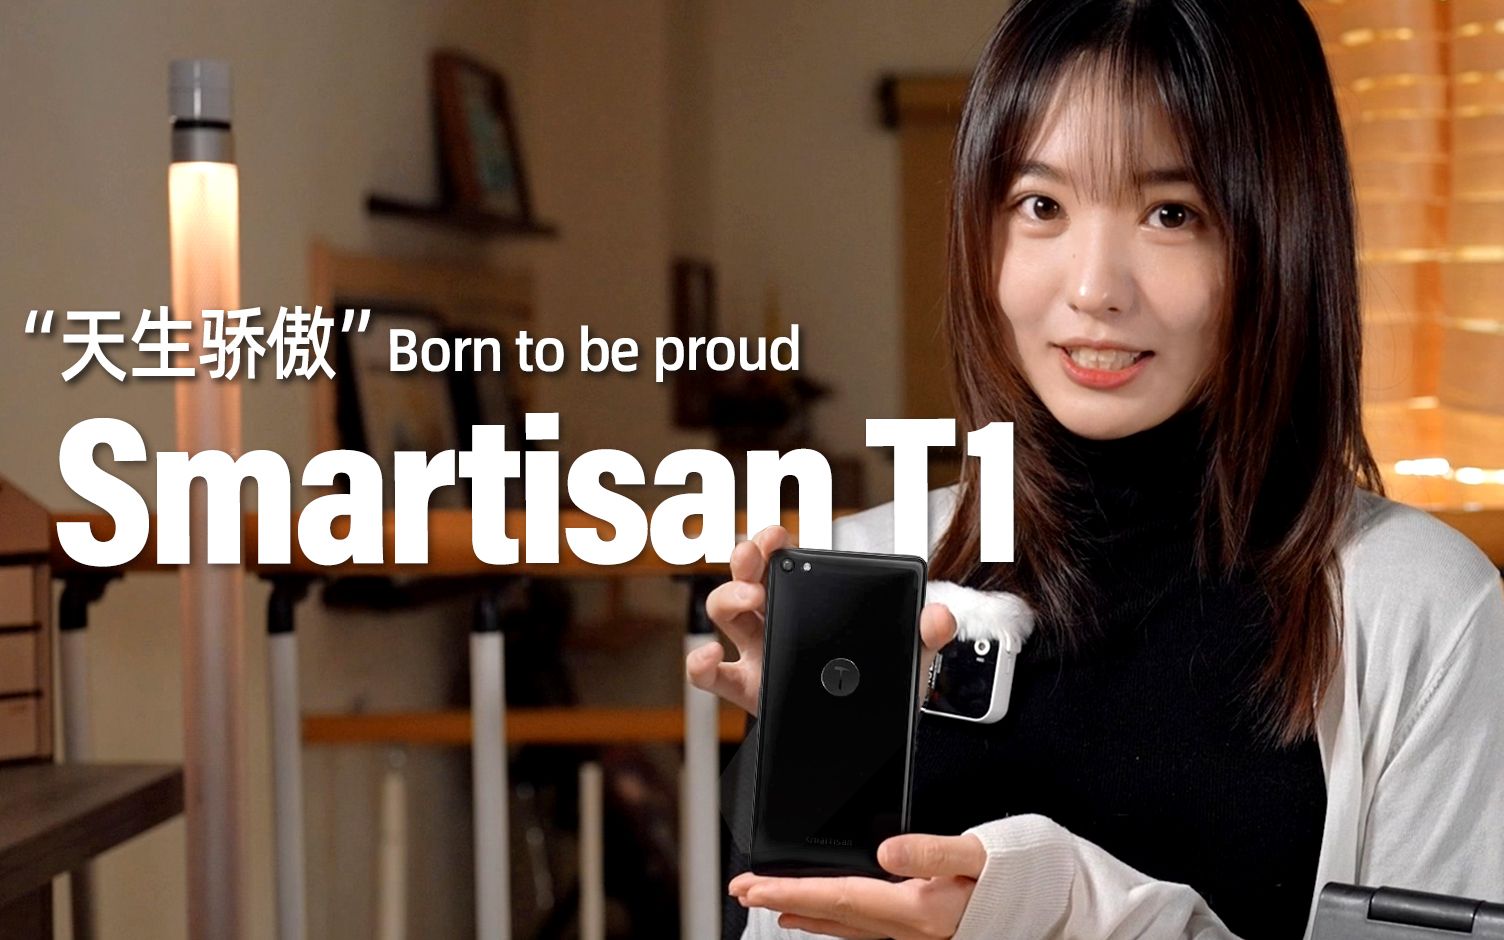 【Smartisan T1】锤子T1，锤子科技的第一款产品能有多精致，罗永浩和他的“天生骄傲” ——[小西设计所]